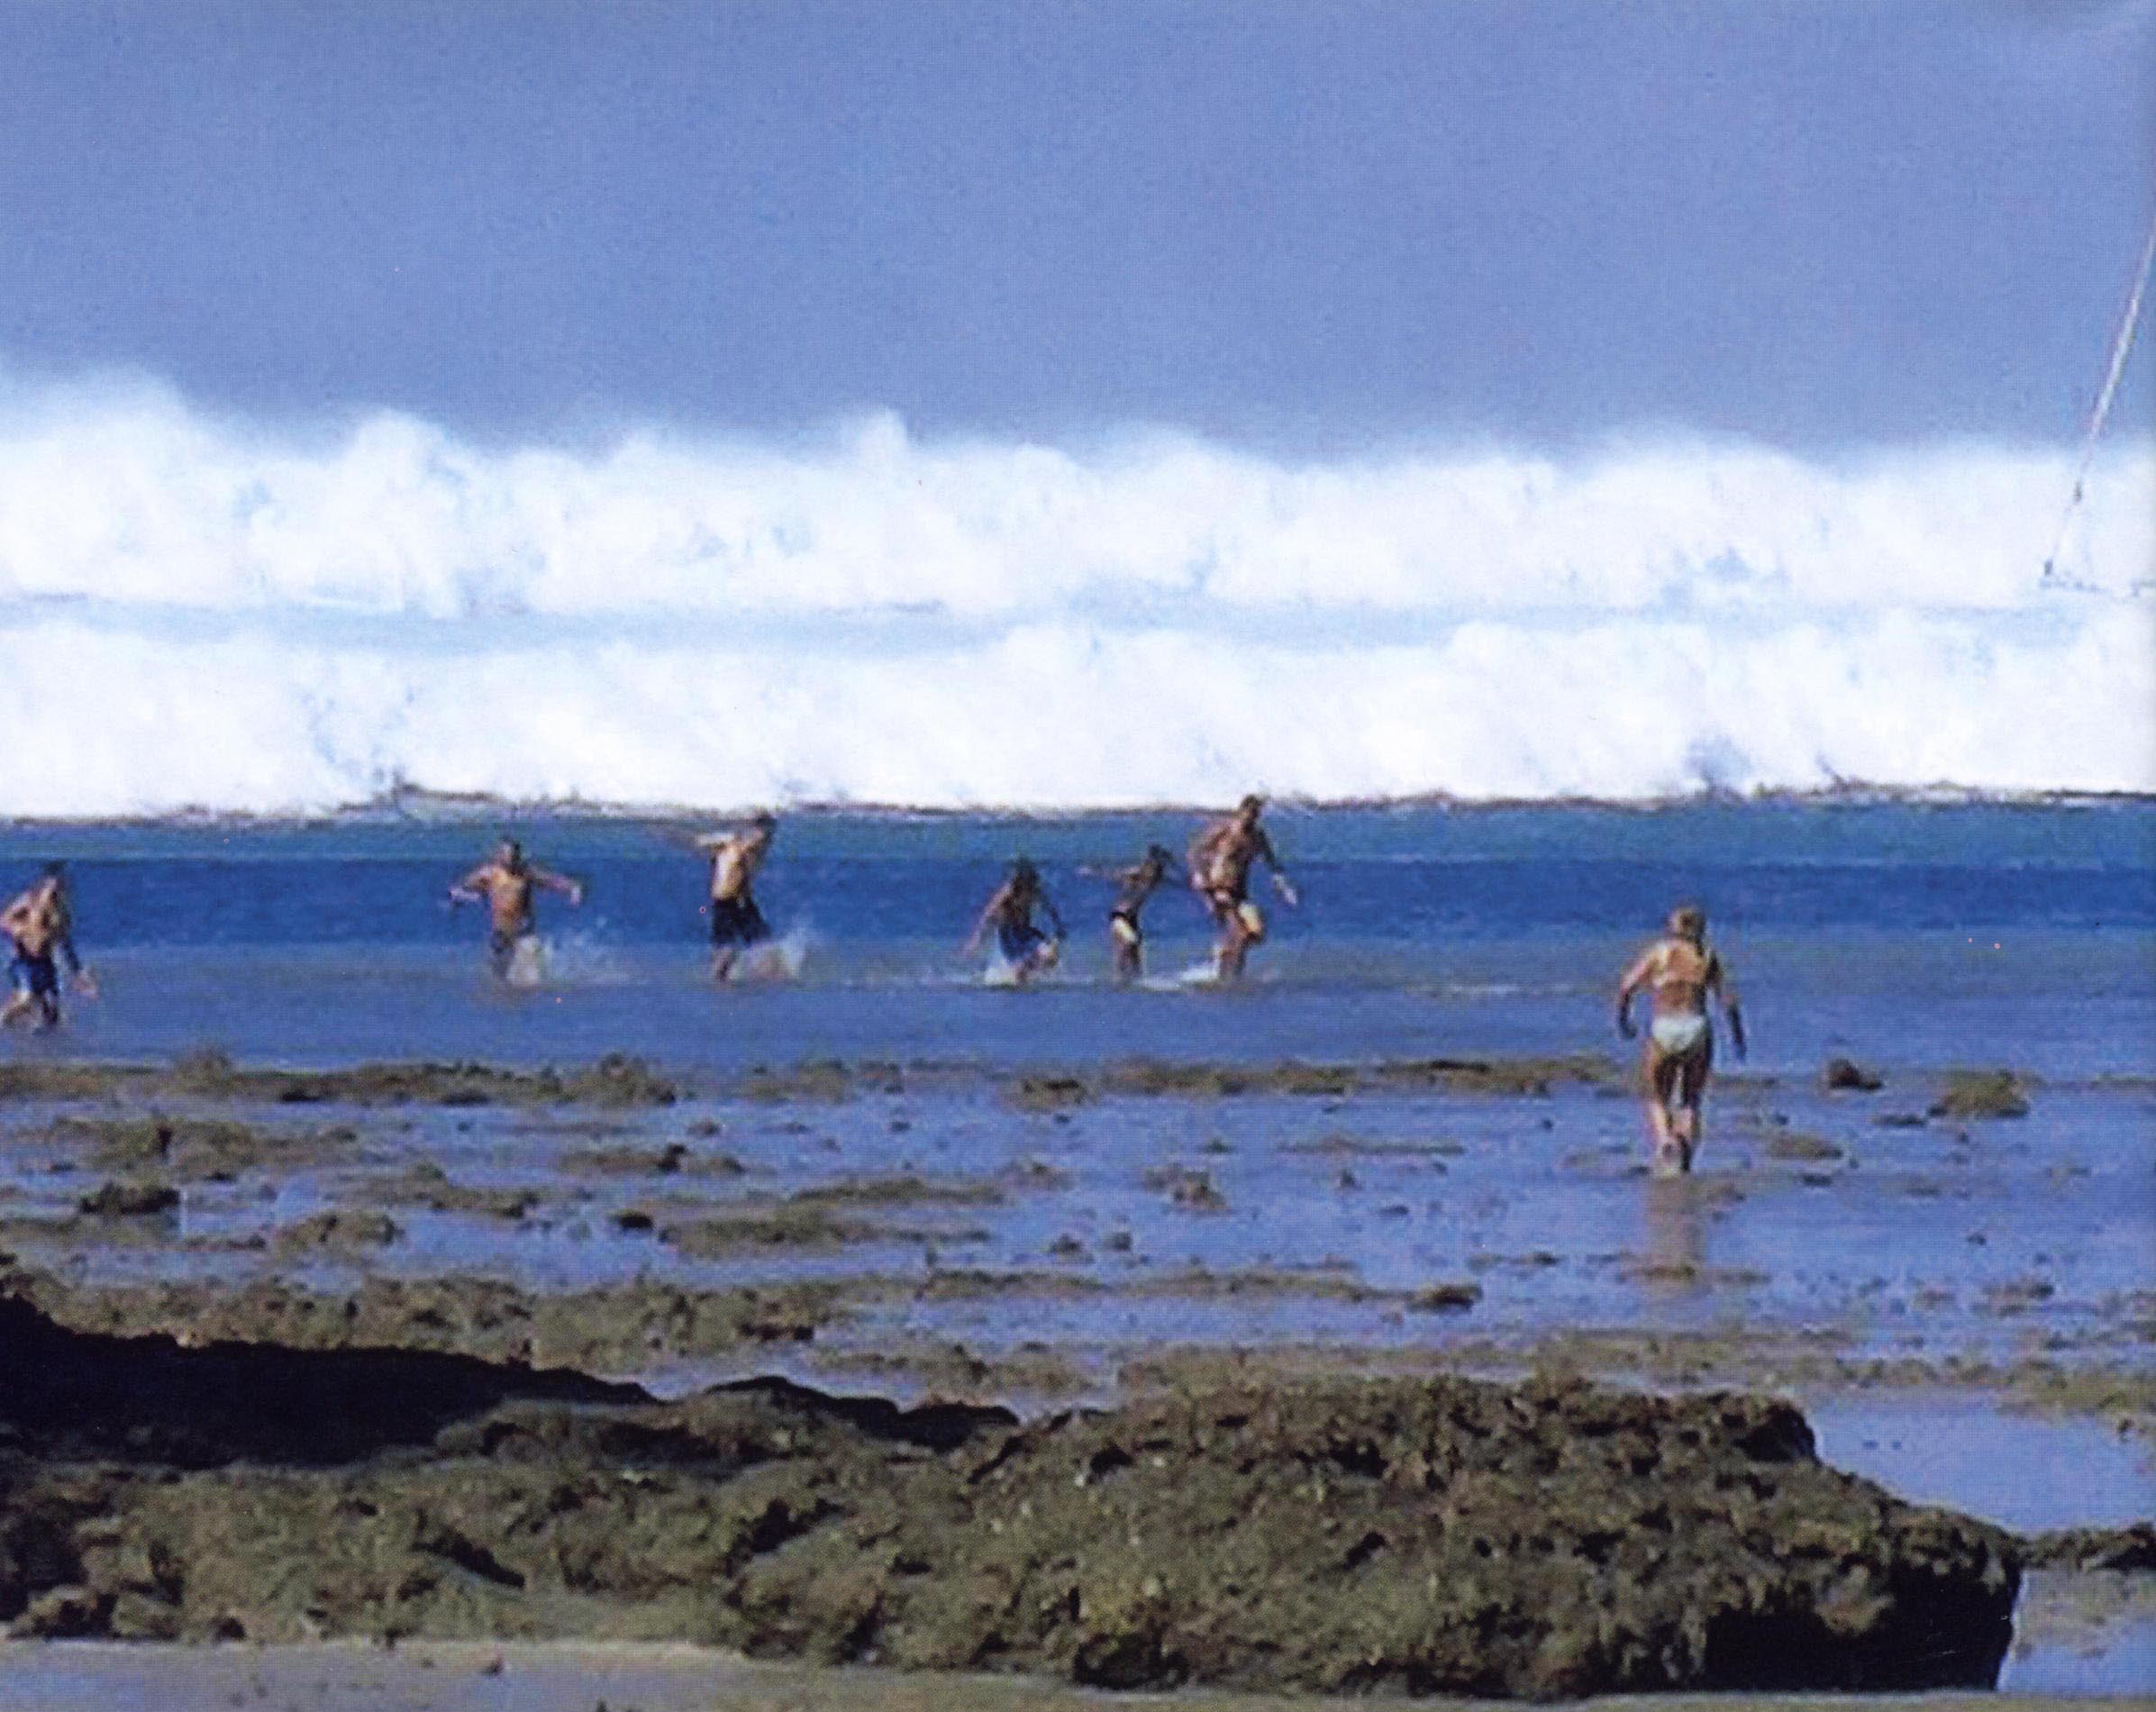 Вода уносит жизни. ЦУНАМИ В индийском океане 2004. ЦУНАМИ 26 декабря 2004 года Таиланд.